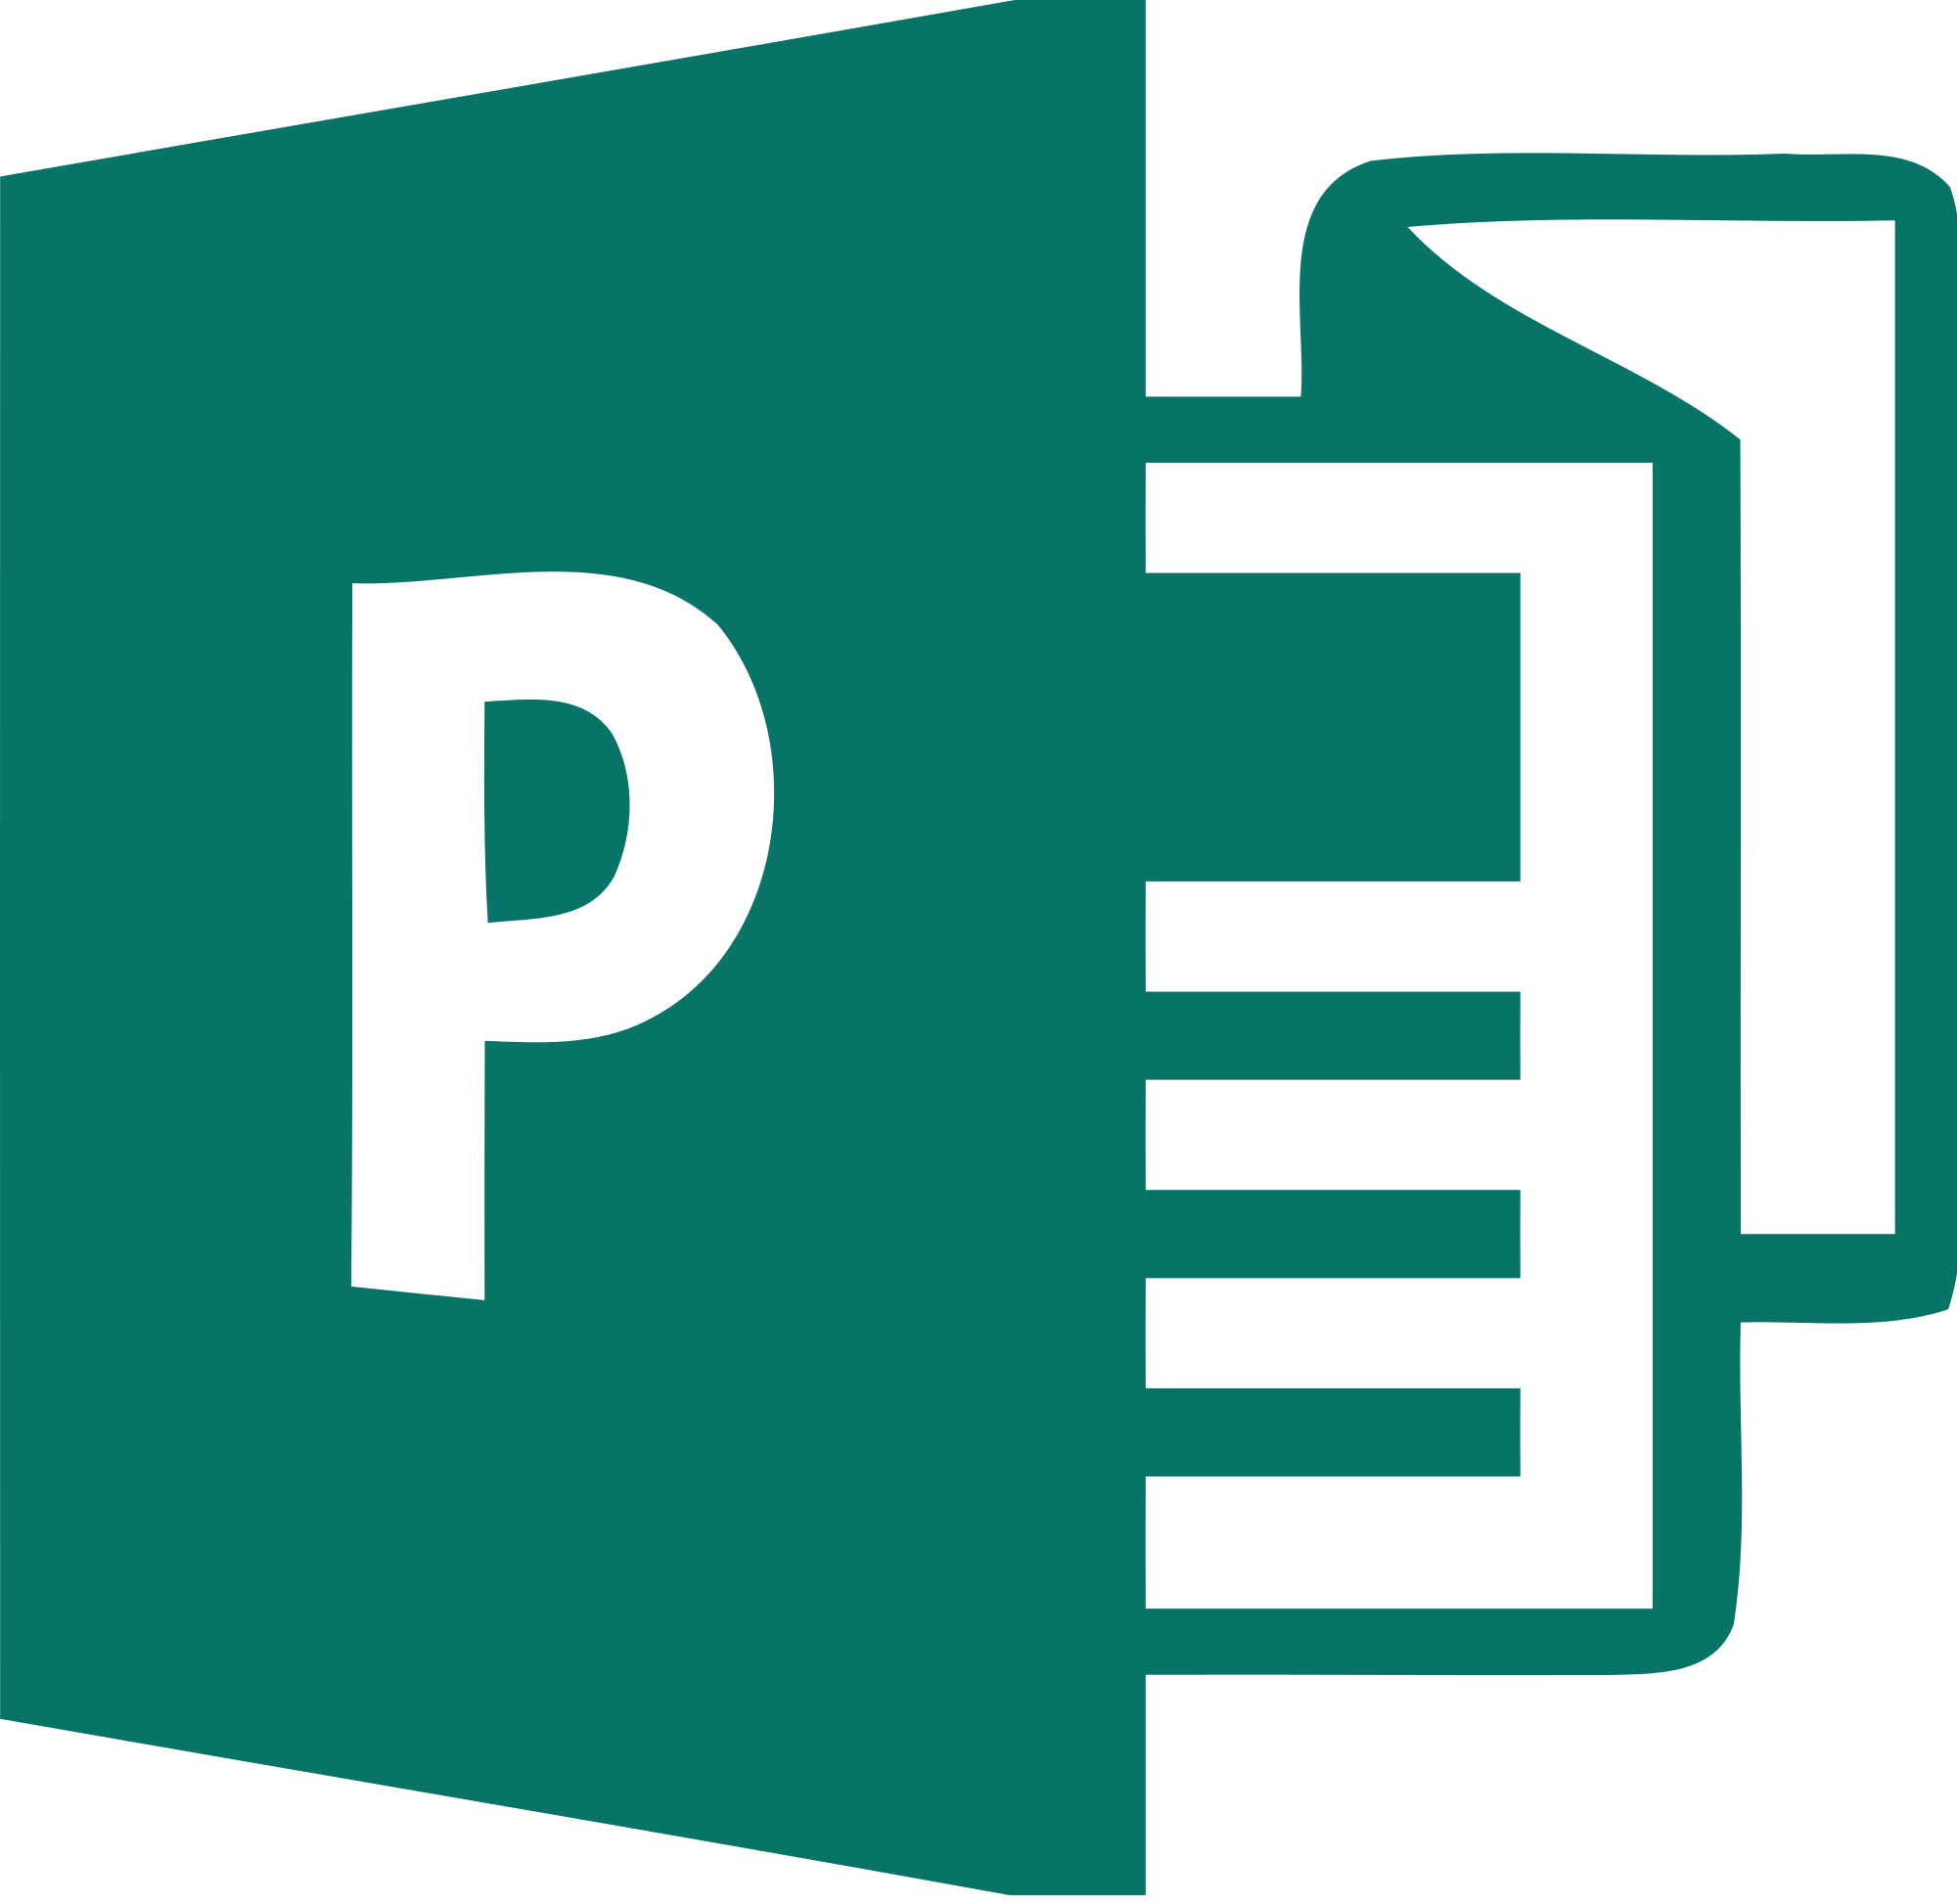 Publisher Logo - Microsoft Publisher 2013 logo.svg